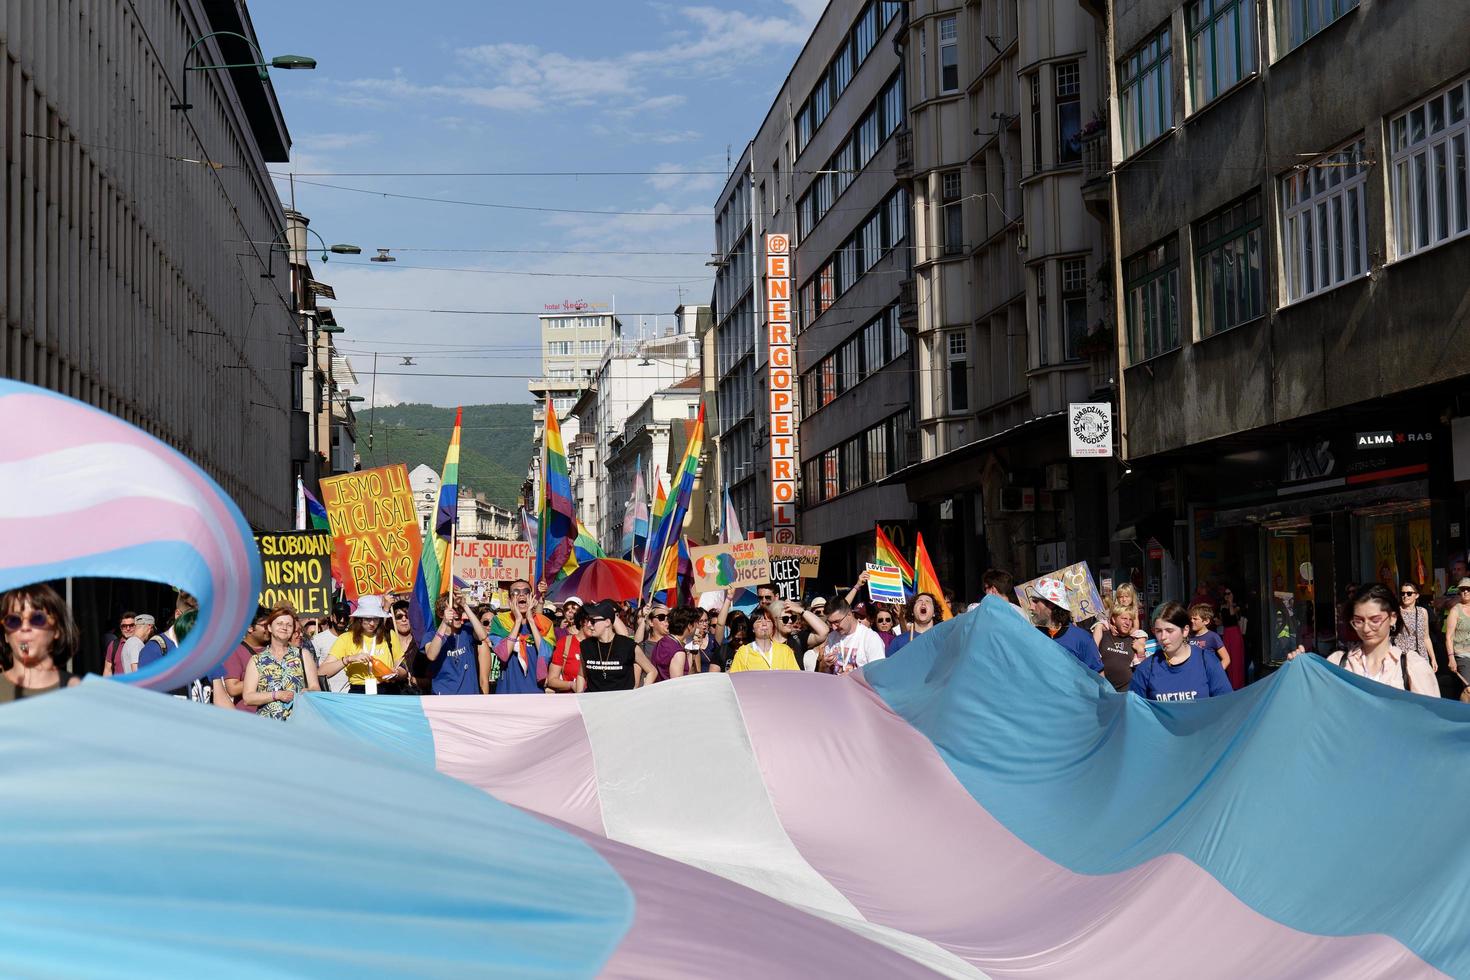 sarajevo, bosnië herzegovina juni 2022 lgbtiq maart trots. kleurrijke parade ter ere van lgbtiq-rechten. demonstranten lopen met spandoeken en vlaggen. mensenrechten. trots, passie en protest. regenboog. foto